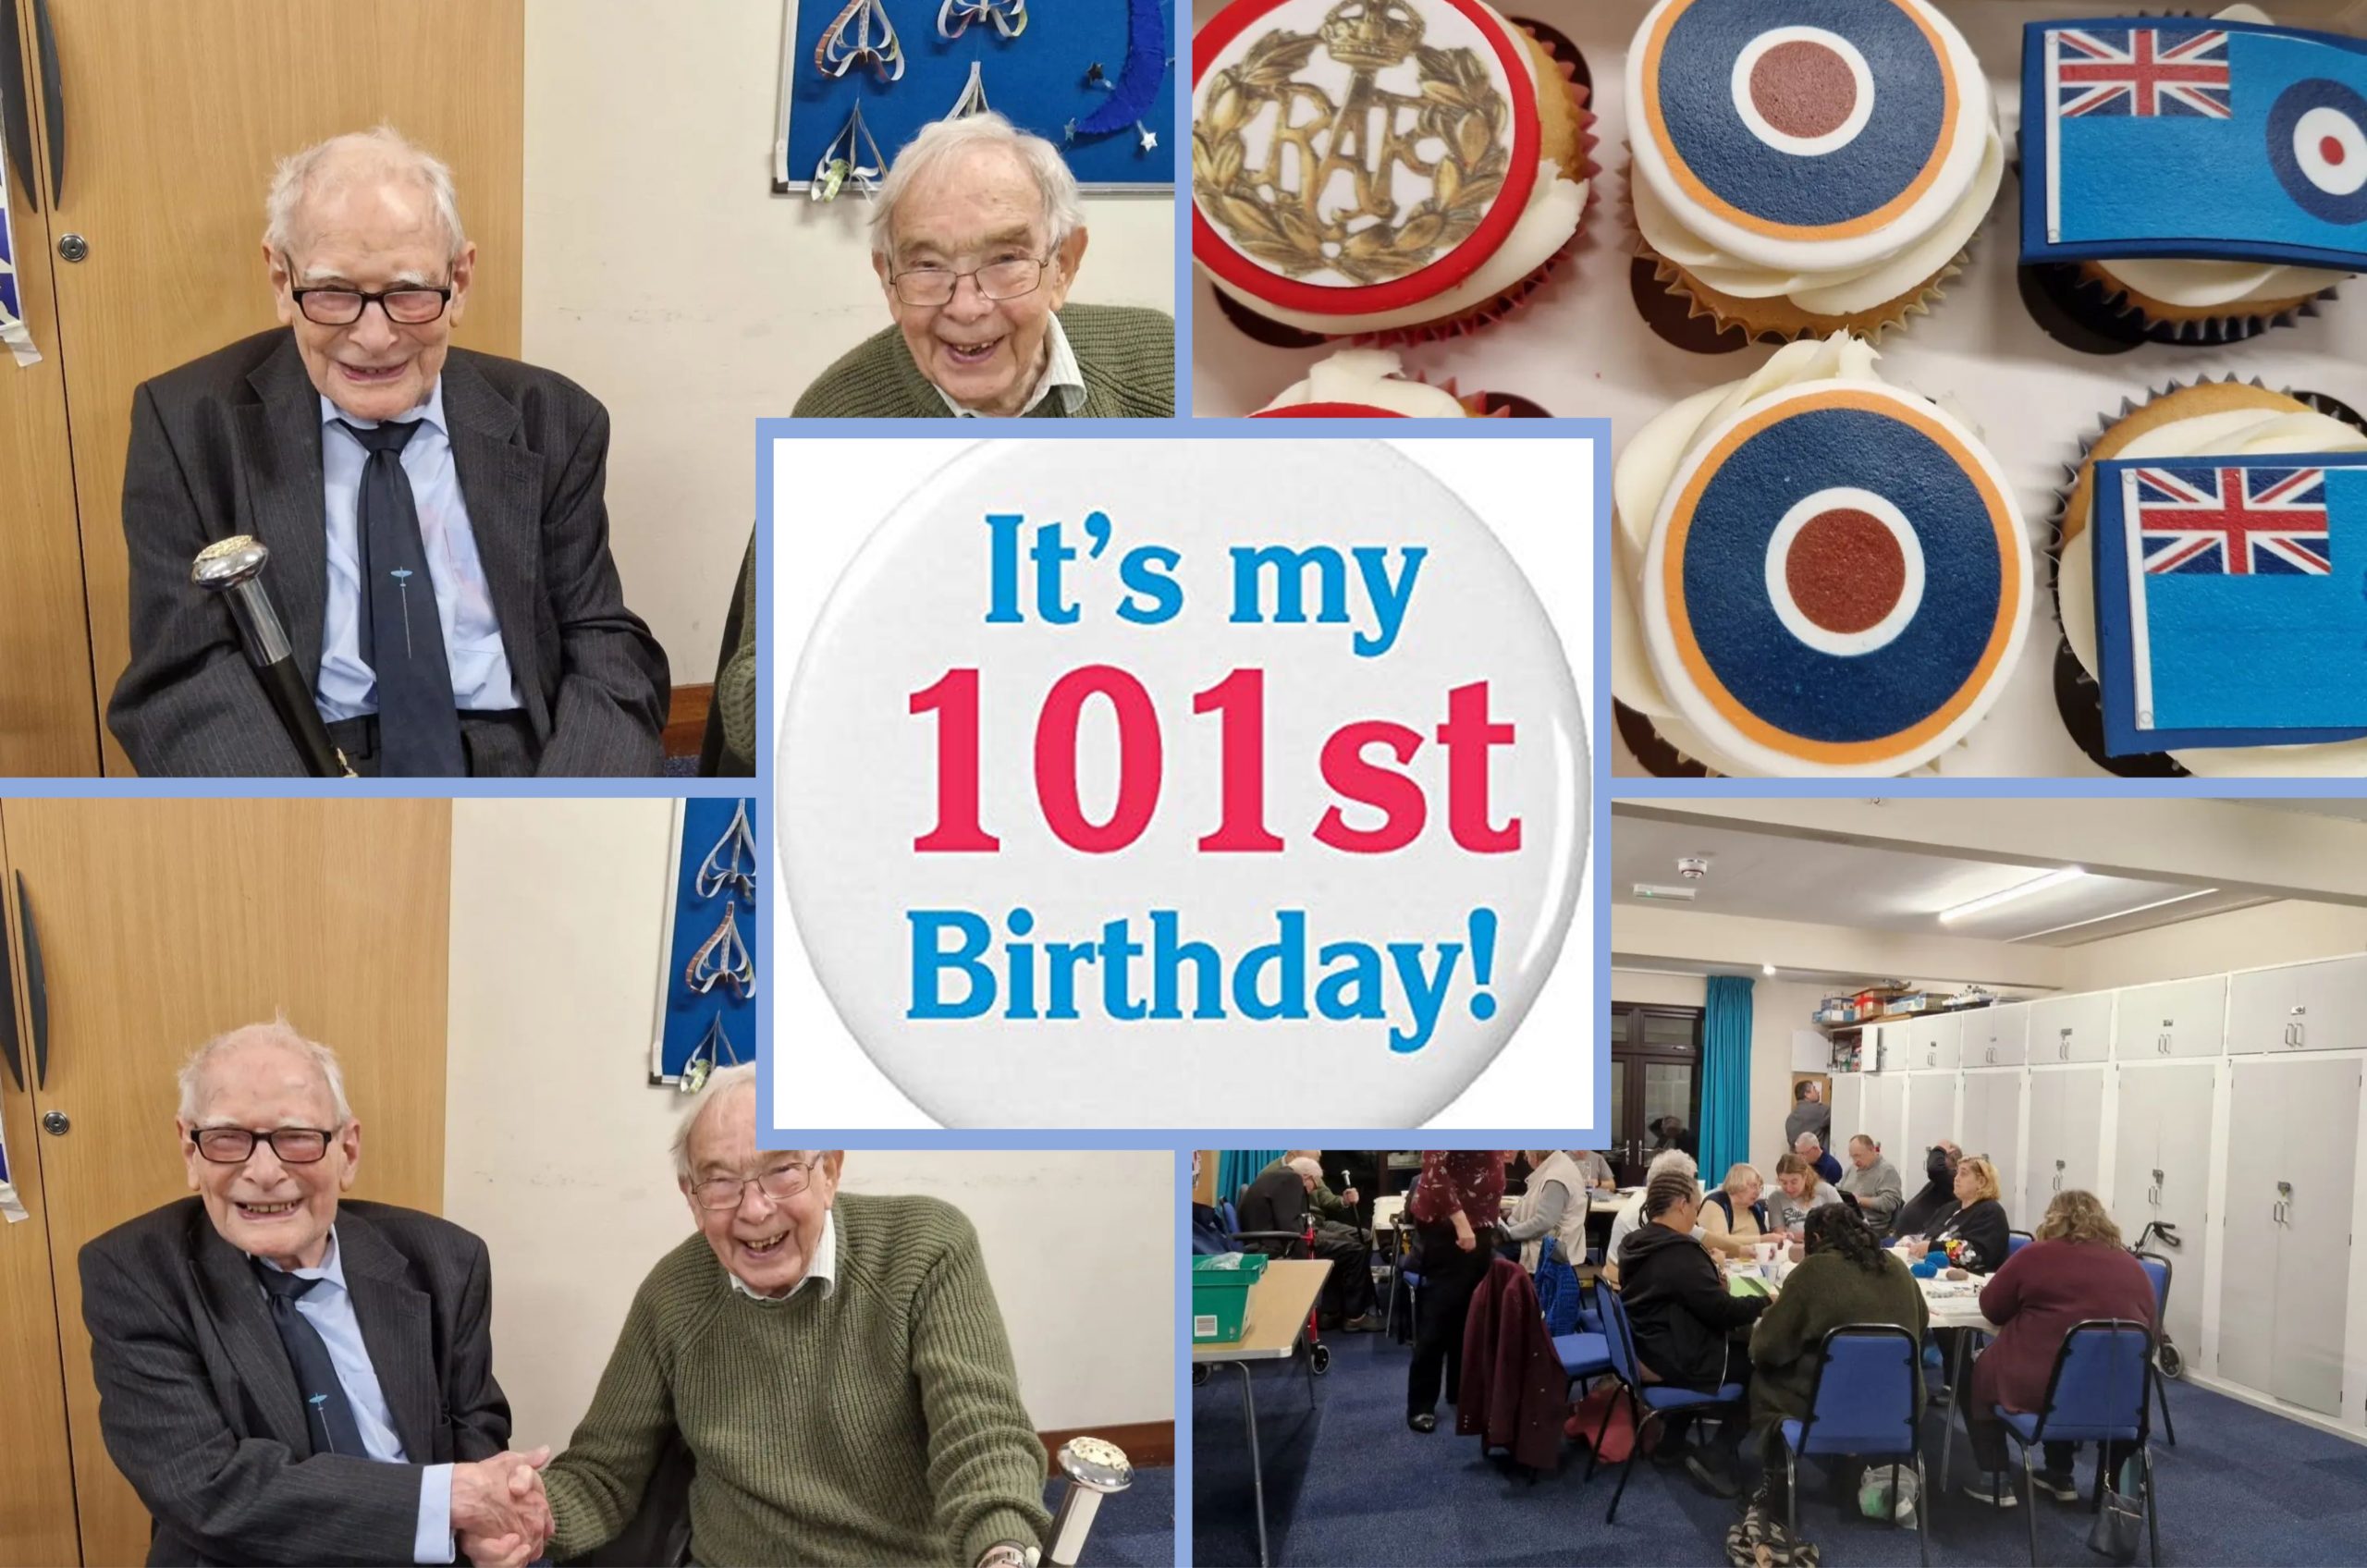 Jack turns 101!